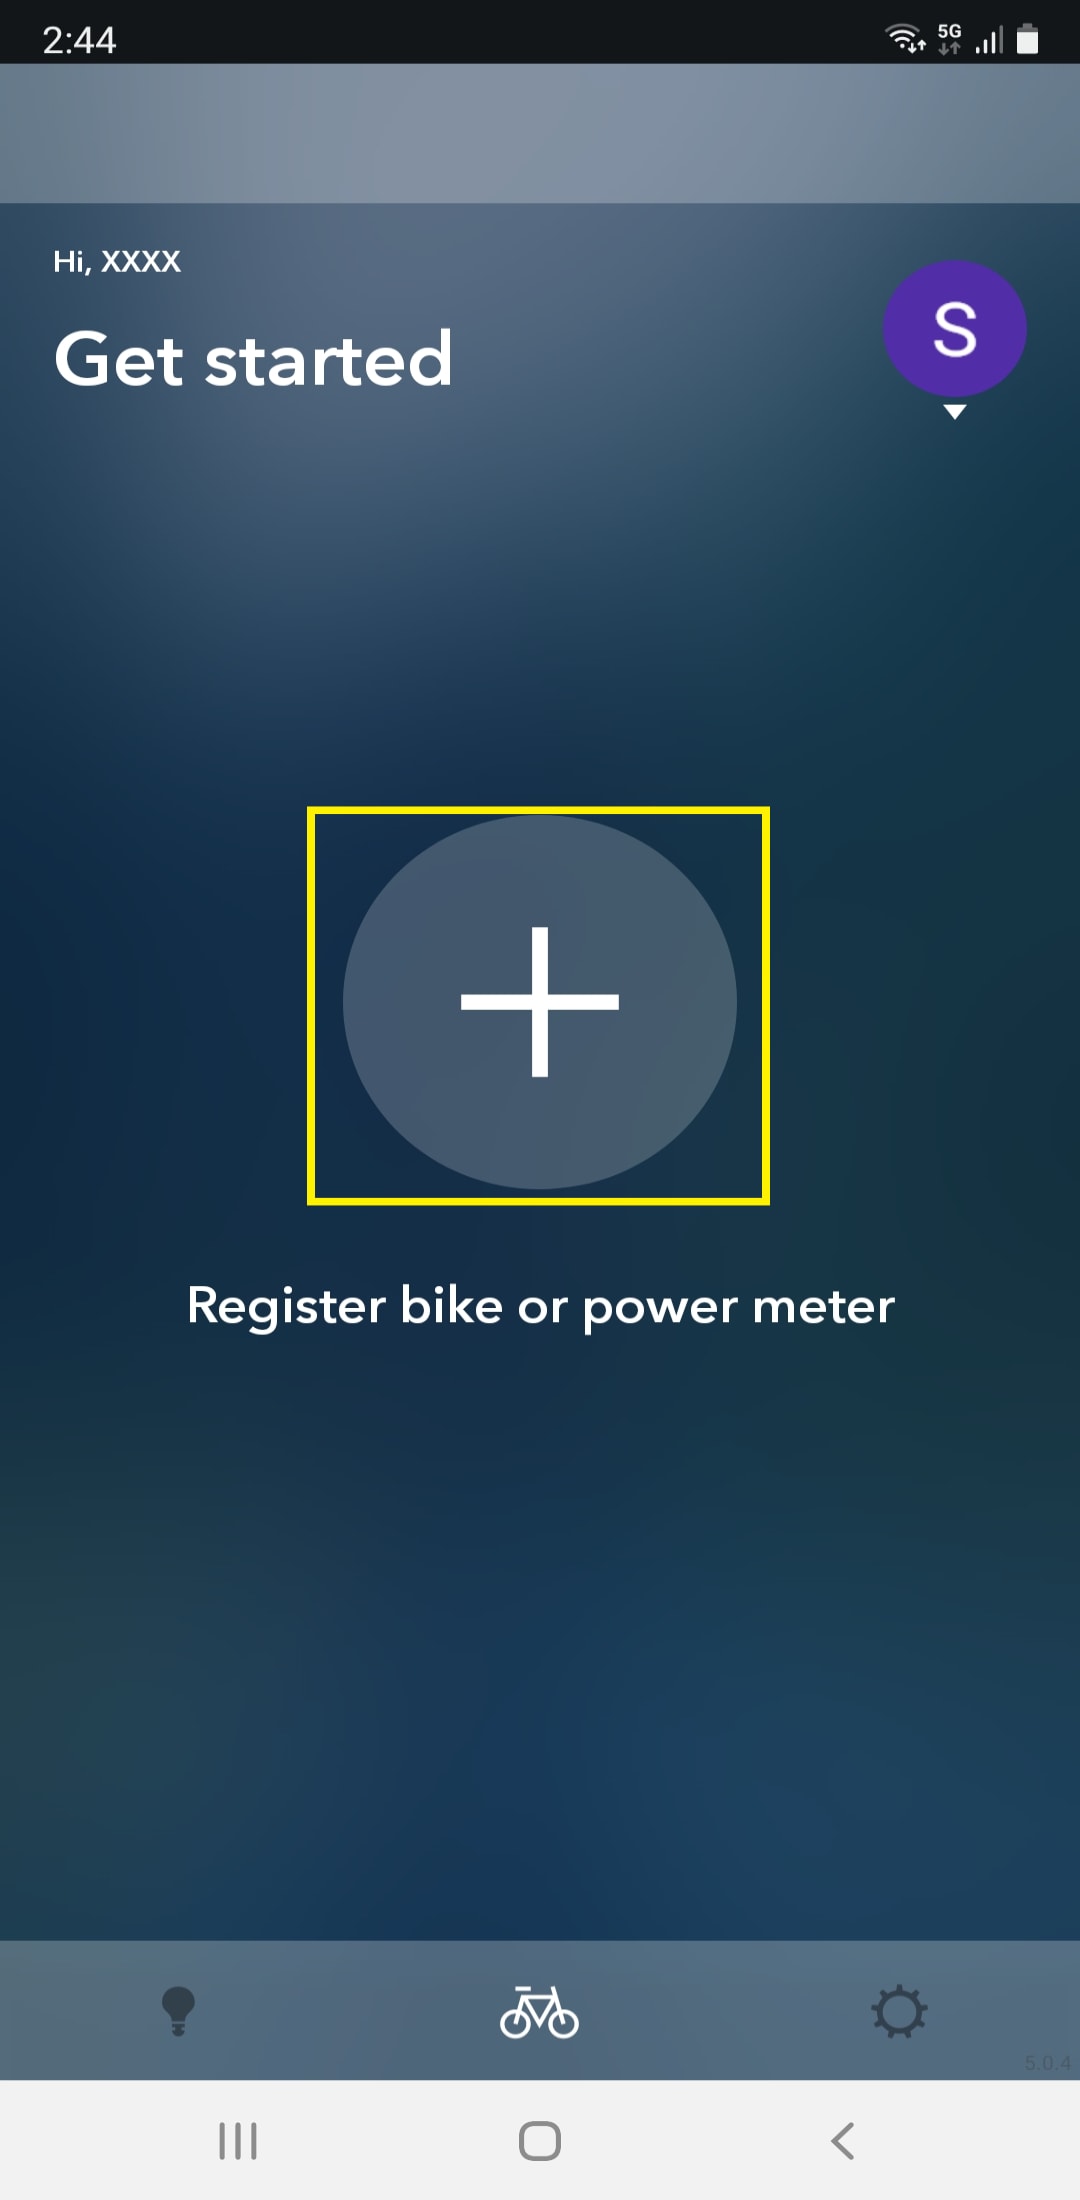 当显示自行车注册界面时点击加标记